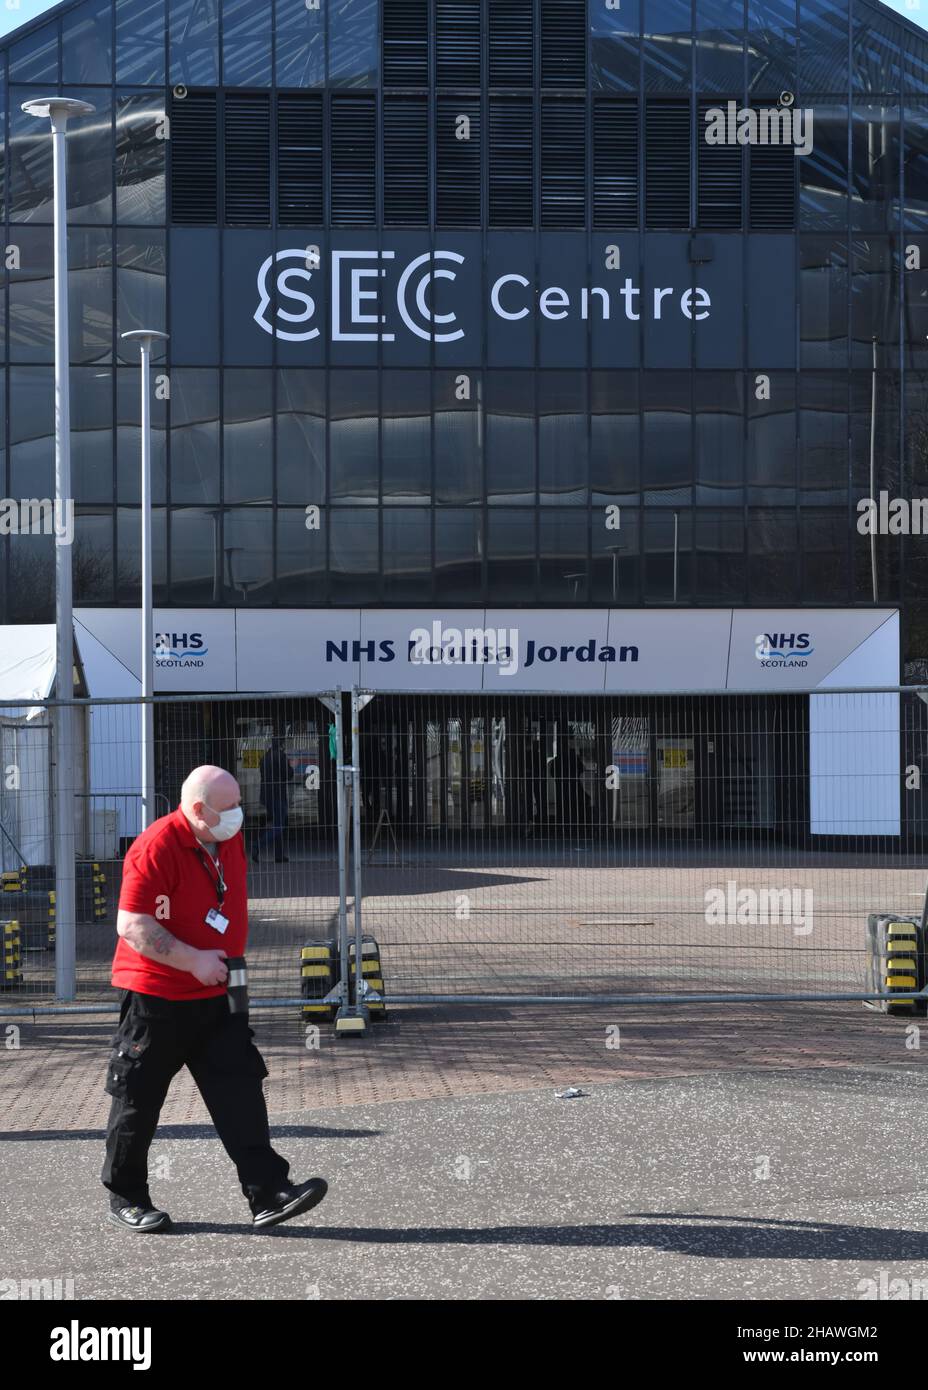 El centro de exposiciones y conferencias escocés (SEC) cambió el nombre del NHS Louisa Jordan durante una pandemia en Glasgow, Escocia, Reino Unido Foto de stock